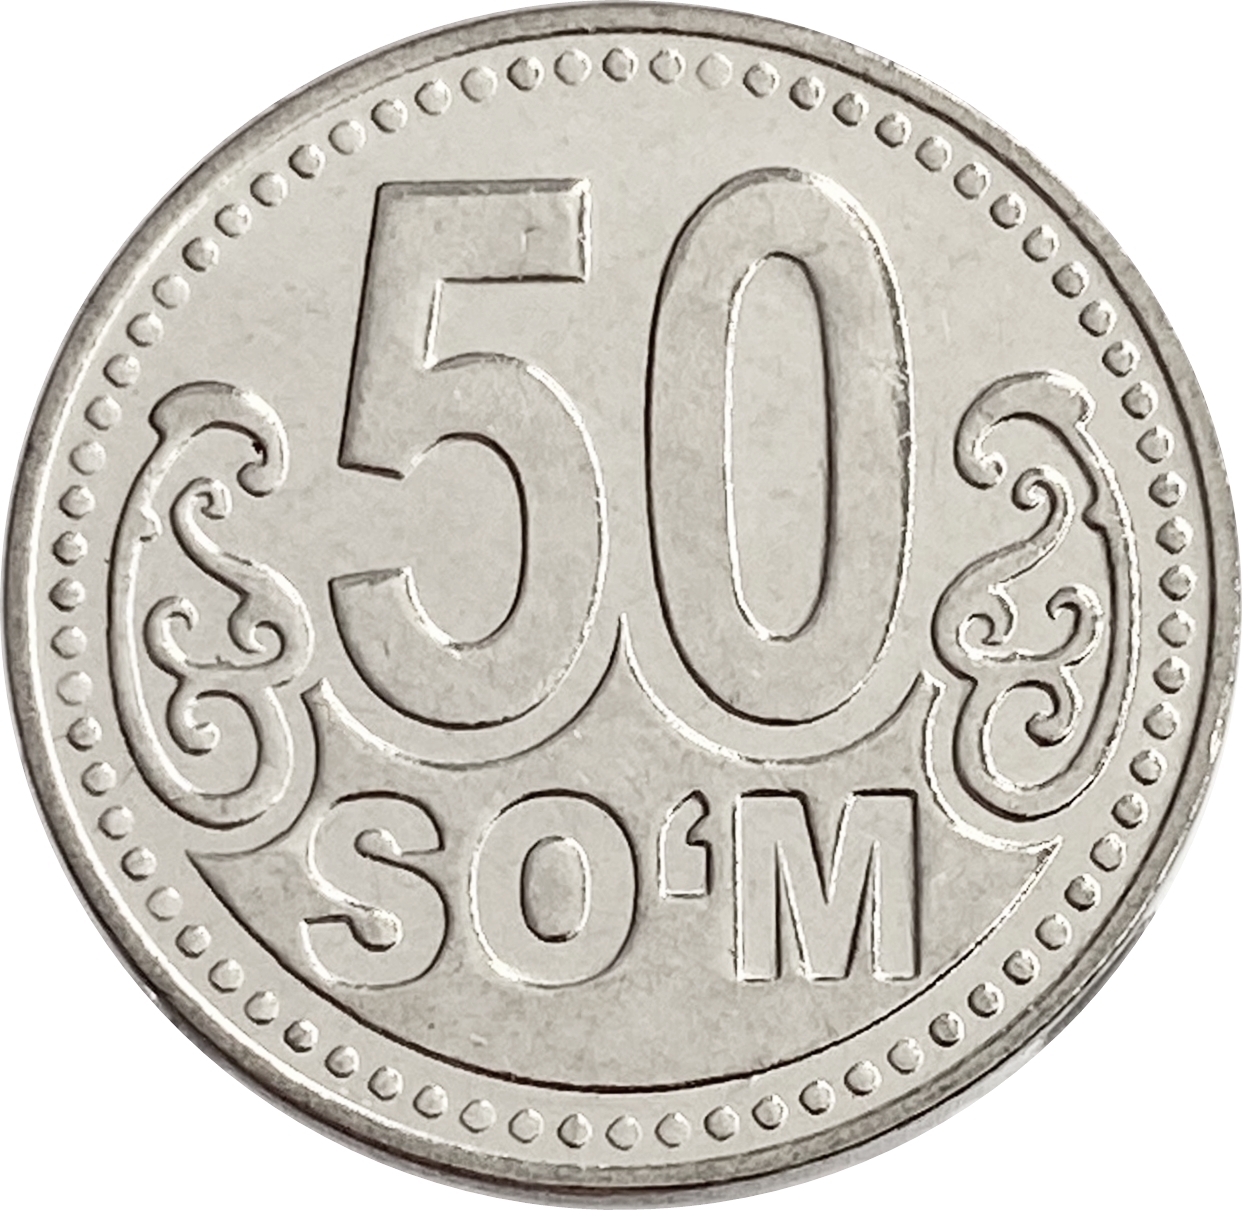 Монета 50 сум. Монета 5 сум. Монета 50 тийин 1994 года Узбекистан. Монеты Узбекистана 2022.